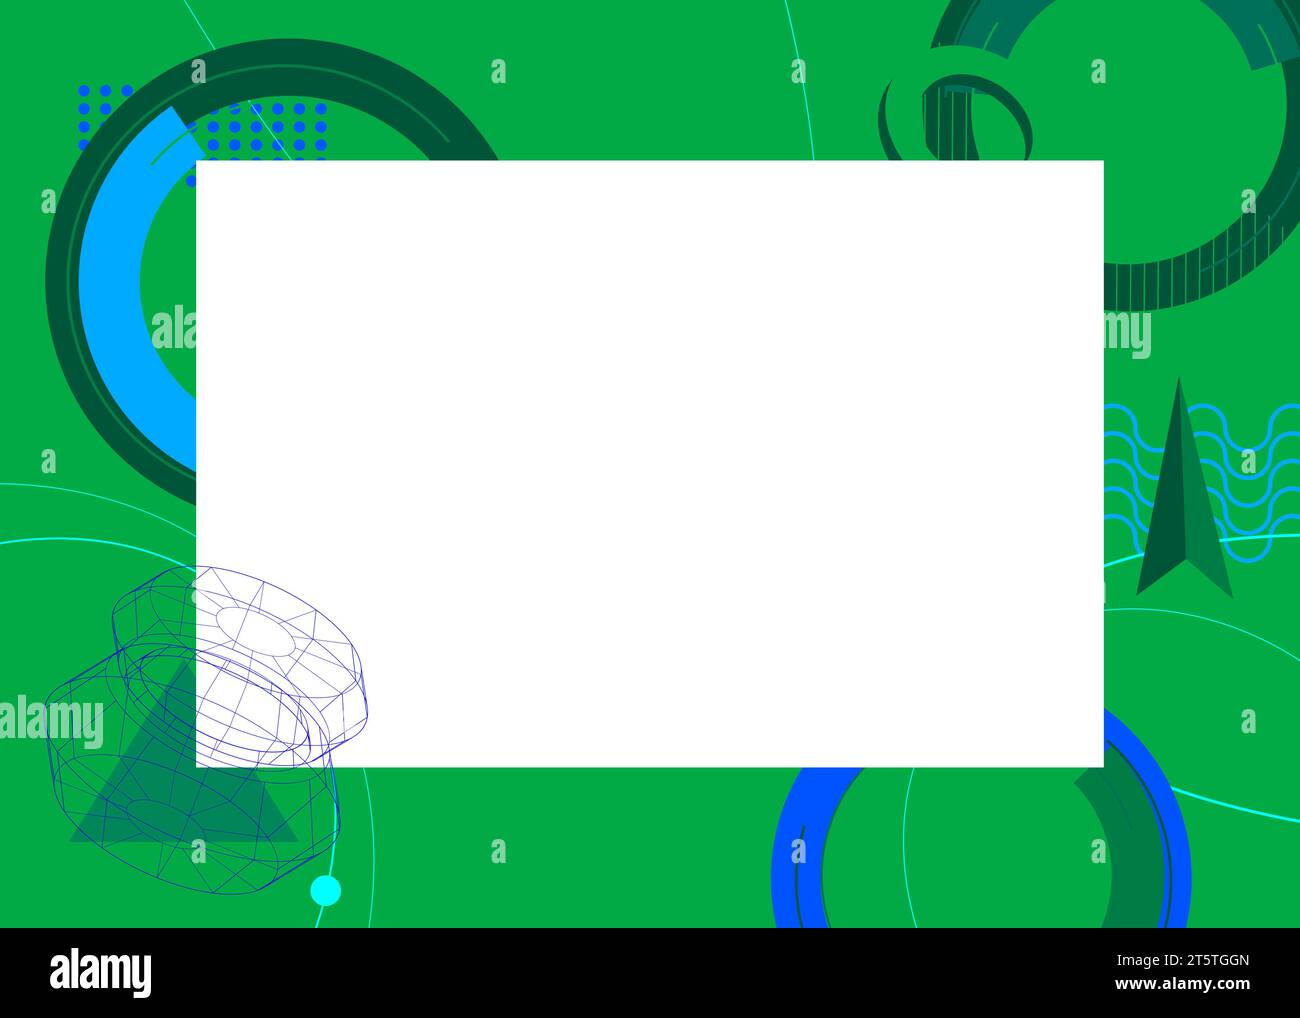 Fond de thème rétro graphique géométrique bleu et vert avec place blanche pour le texte. Cadre des éléments géométriques minimaux. Vecteur de formes abstraites vintage Illustration de Vecteur